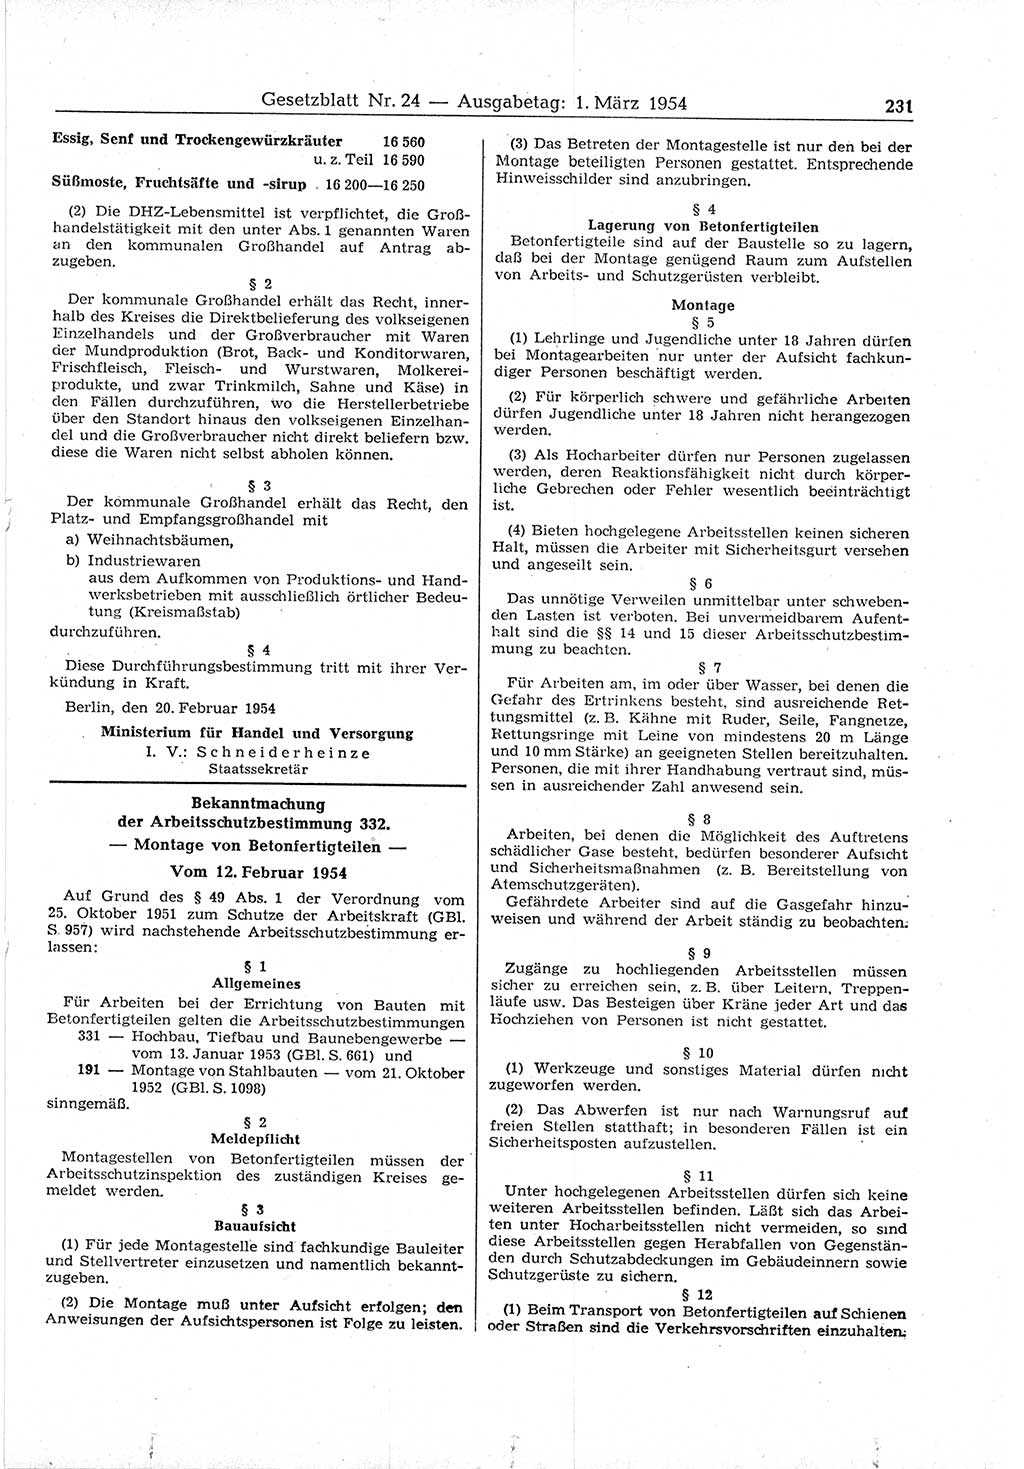 Gesetzblatt (GBl.) der Deutschen Demokratischen Republik (DDR) 1954, Seite 231 (GBl. DDR 1954, S. 231)